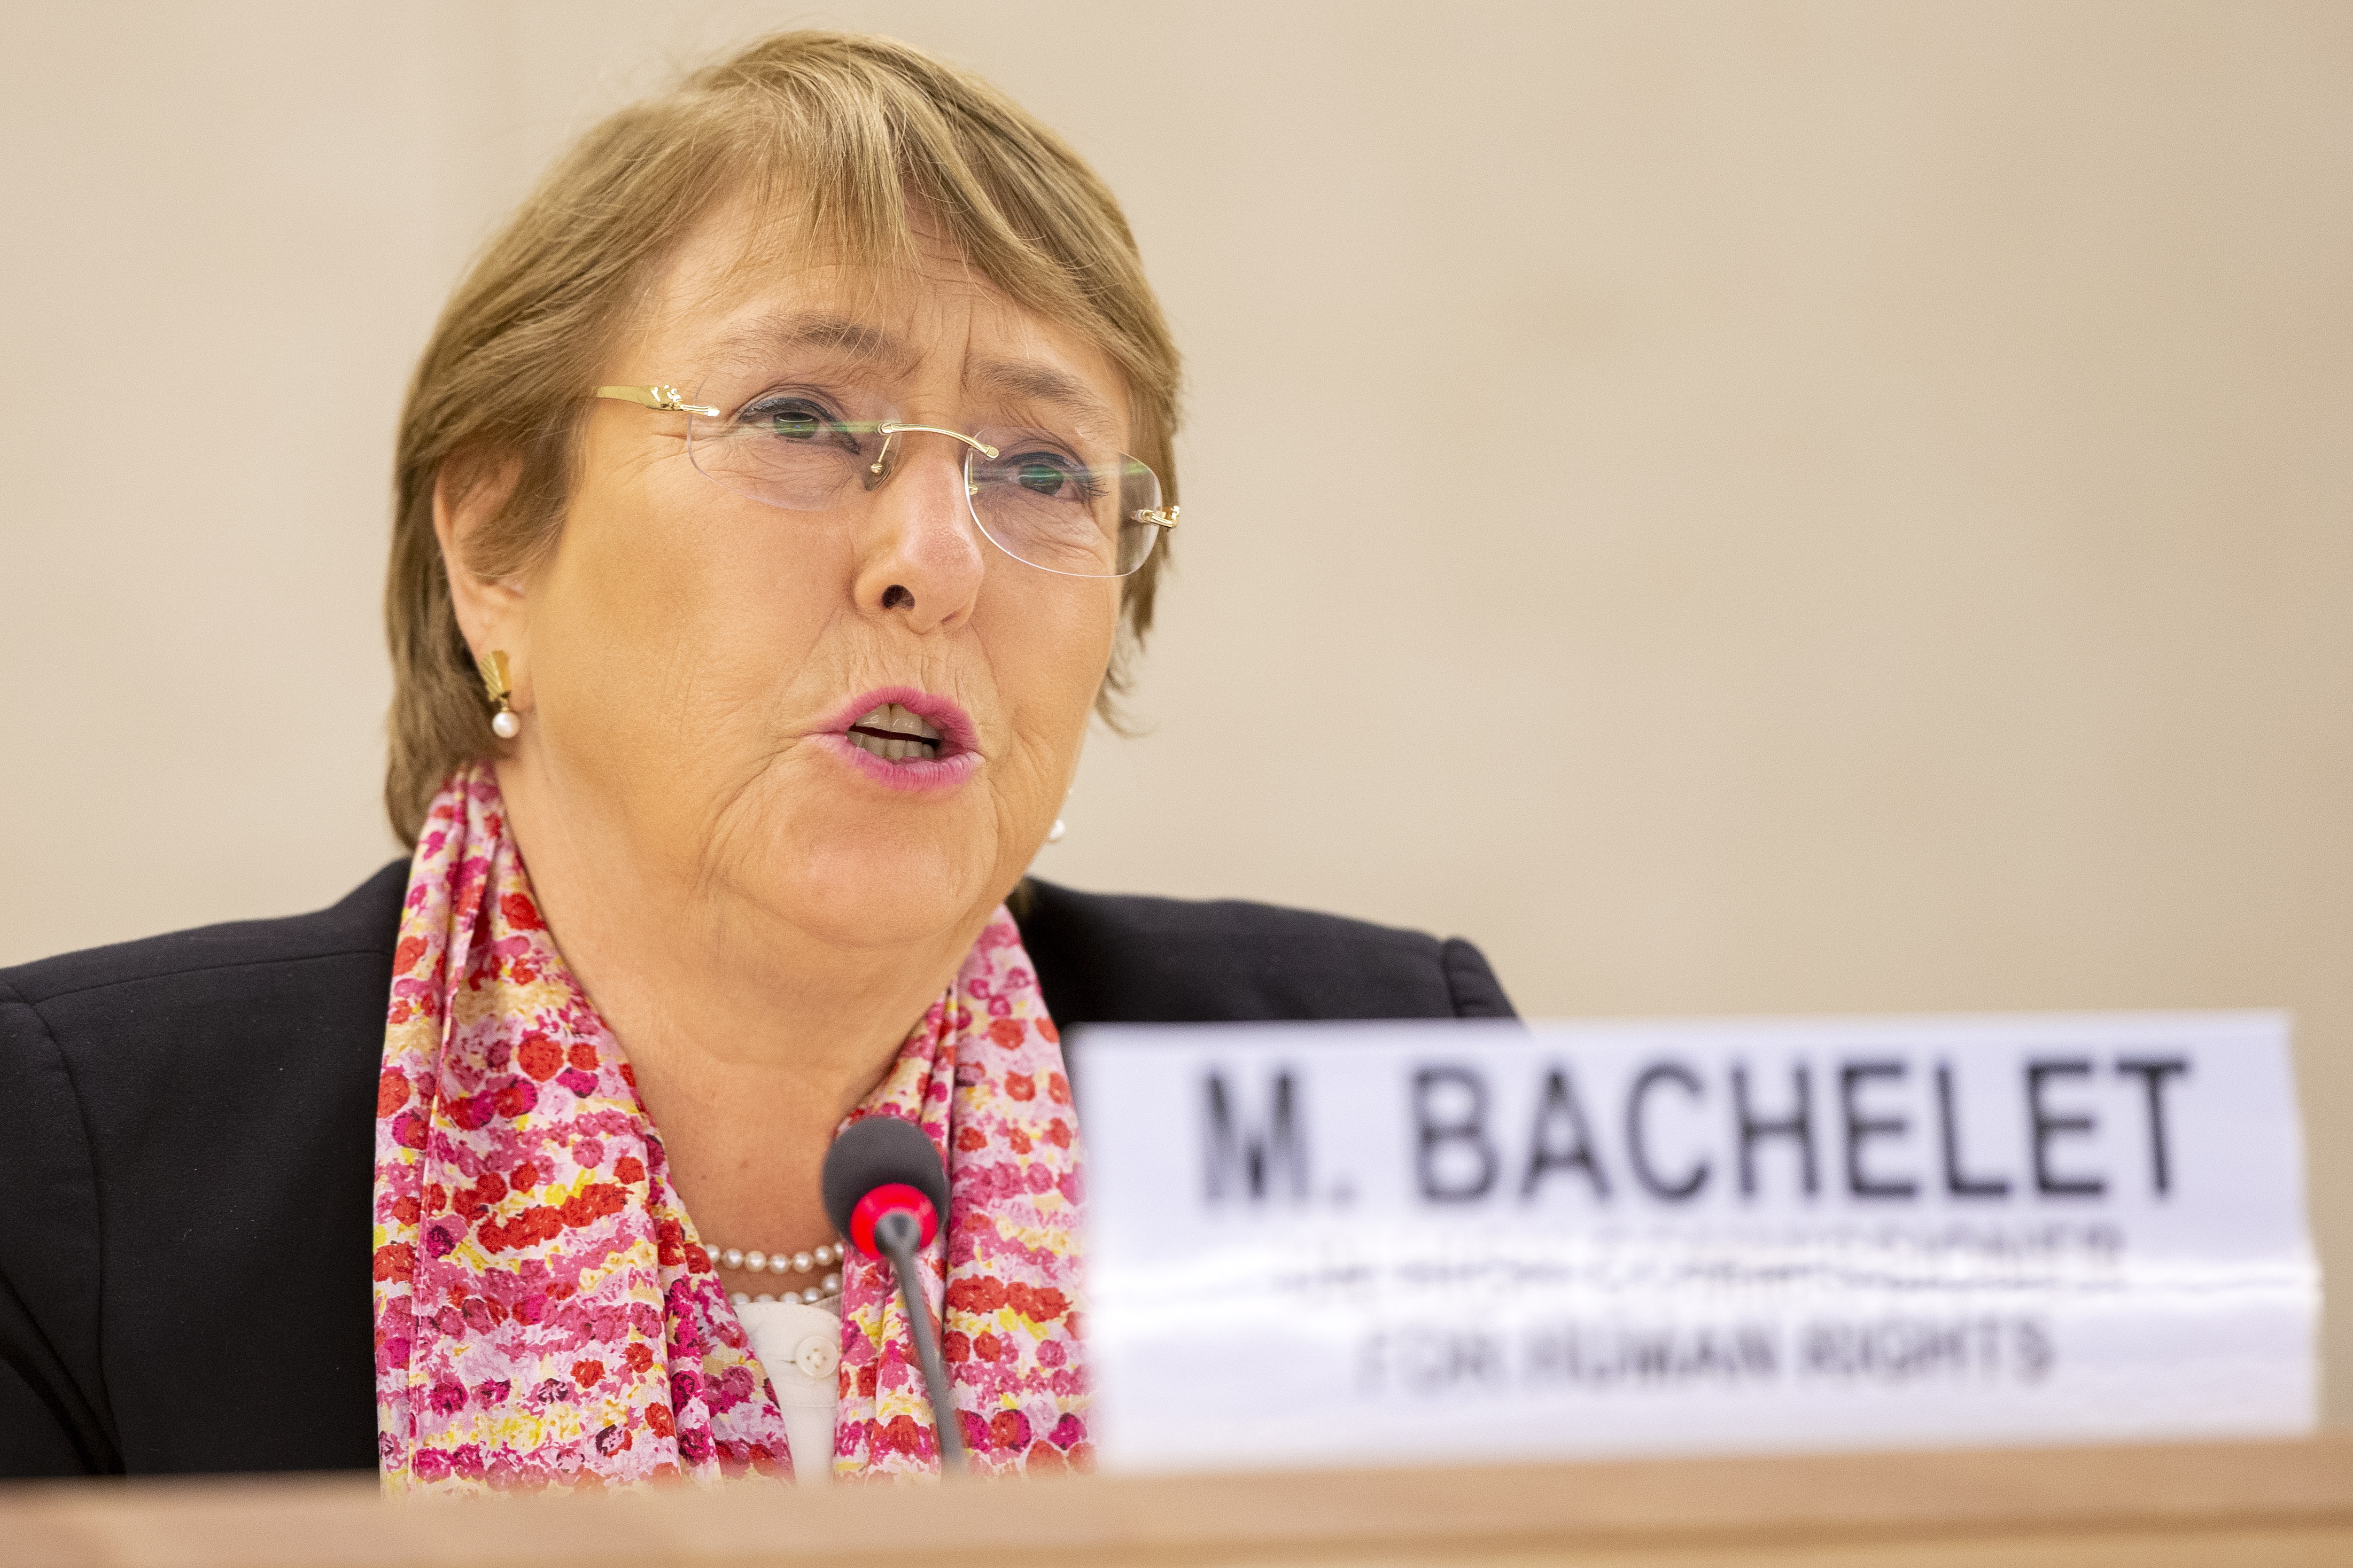 Michelle Bachelet (EFE/EPA/SALVATORE DI NOLFI/Archivo)
